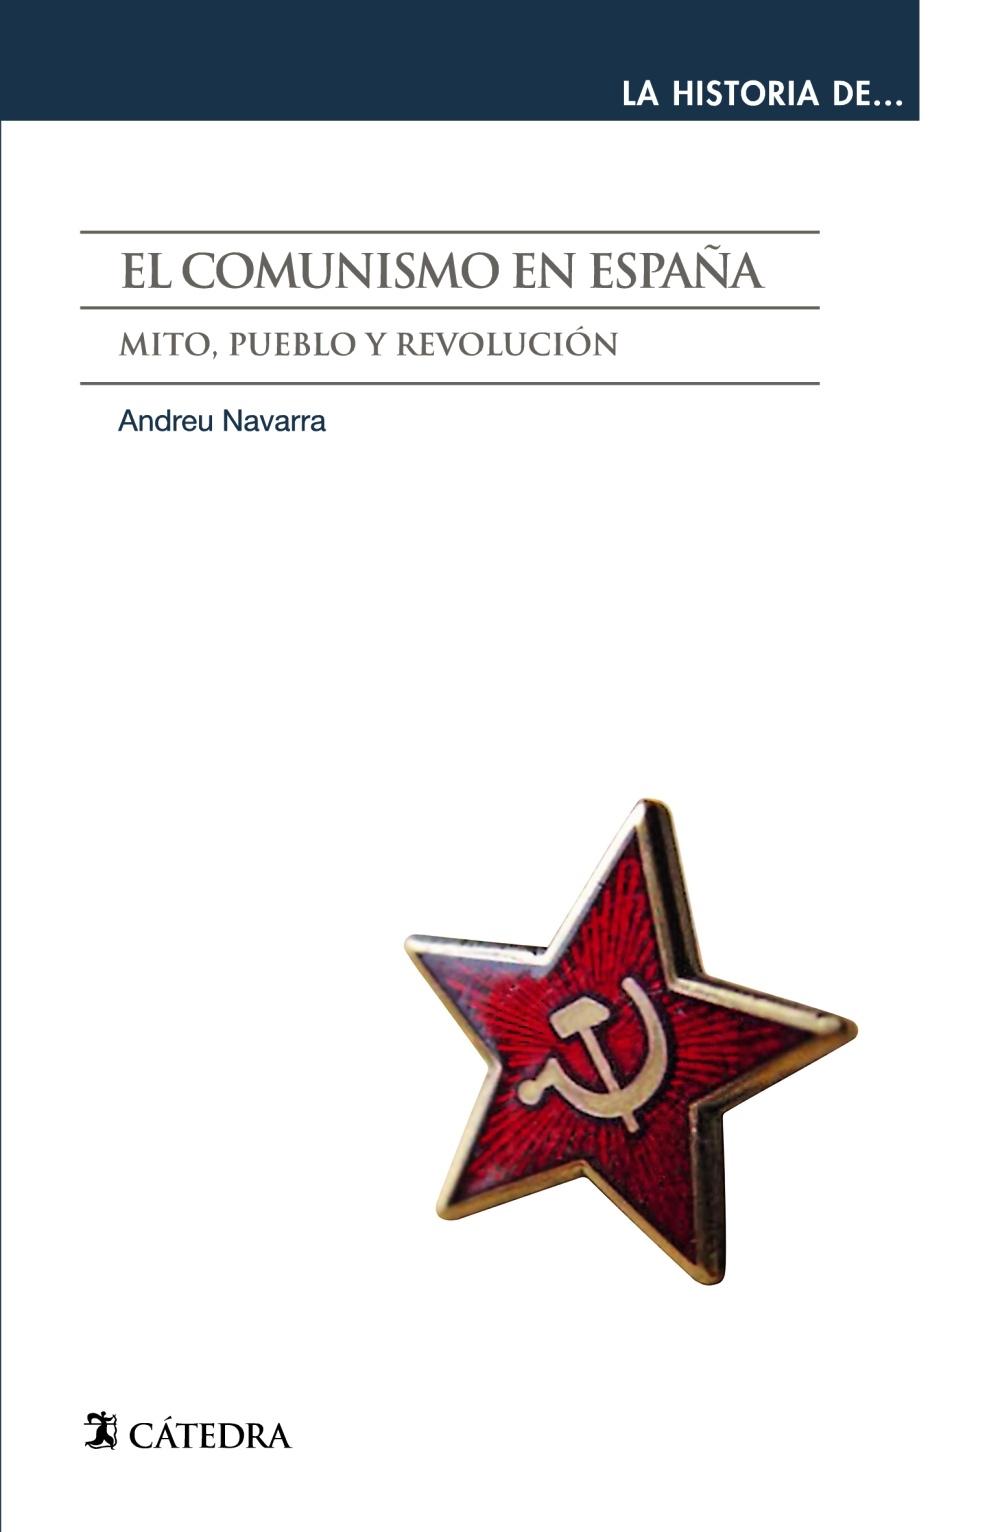 El Comunismo en España "Mito, Pueblo y Revolución"